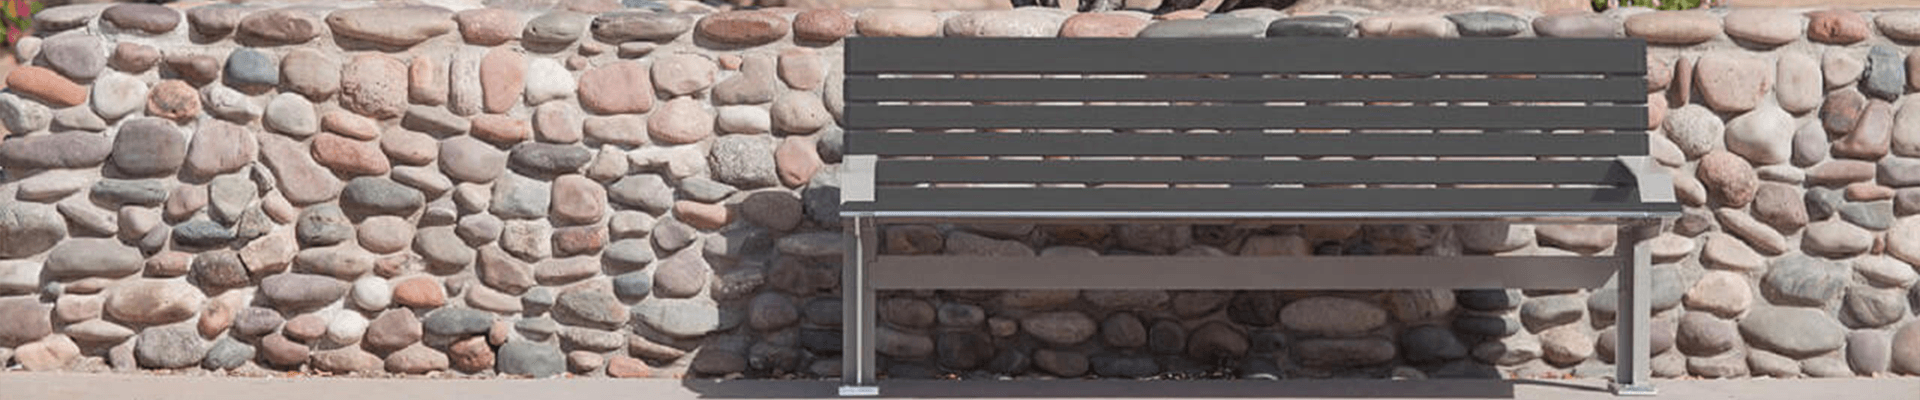 安博体育电竞ios-不锈钢公园椅,户外公园椅生产厂家-安博体育电竞ios